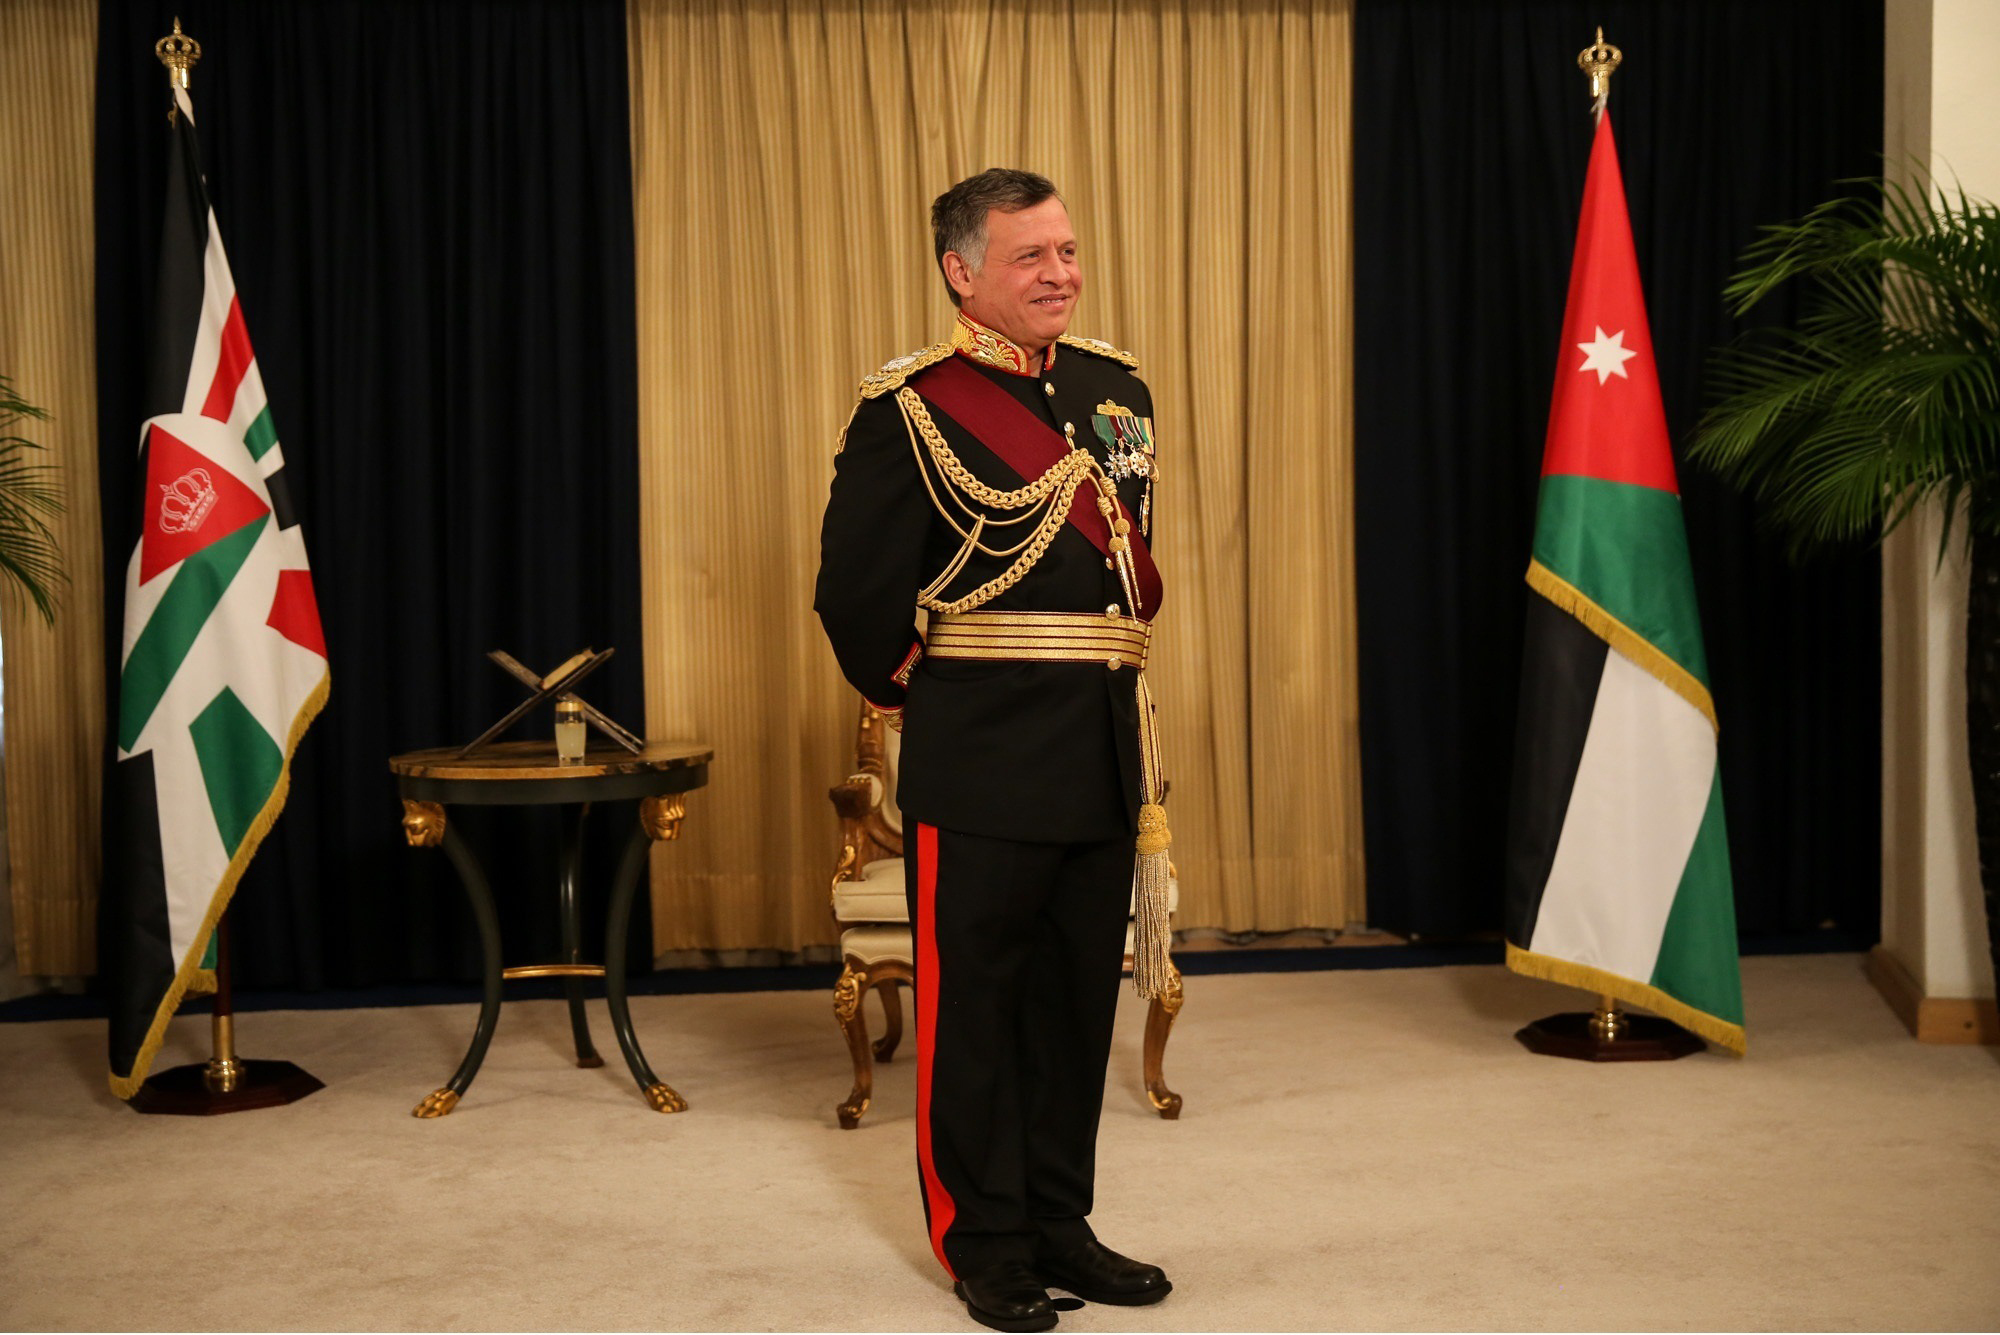 الملك يتلقى برقيات تهنئة بعيد الجلوس وذكرى الثورة العربية ويوم الجيش